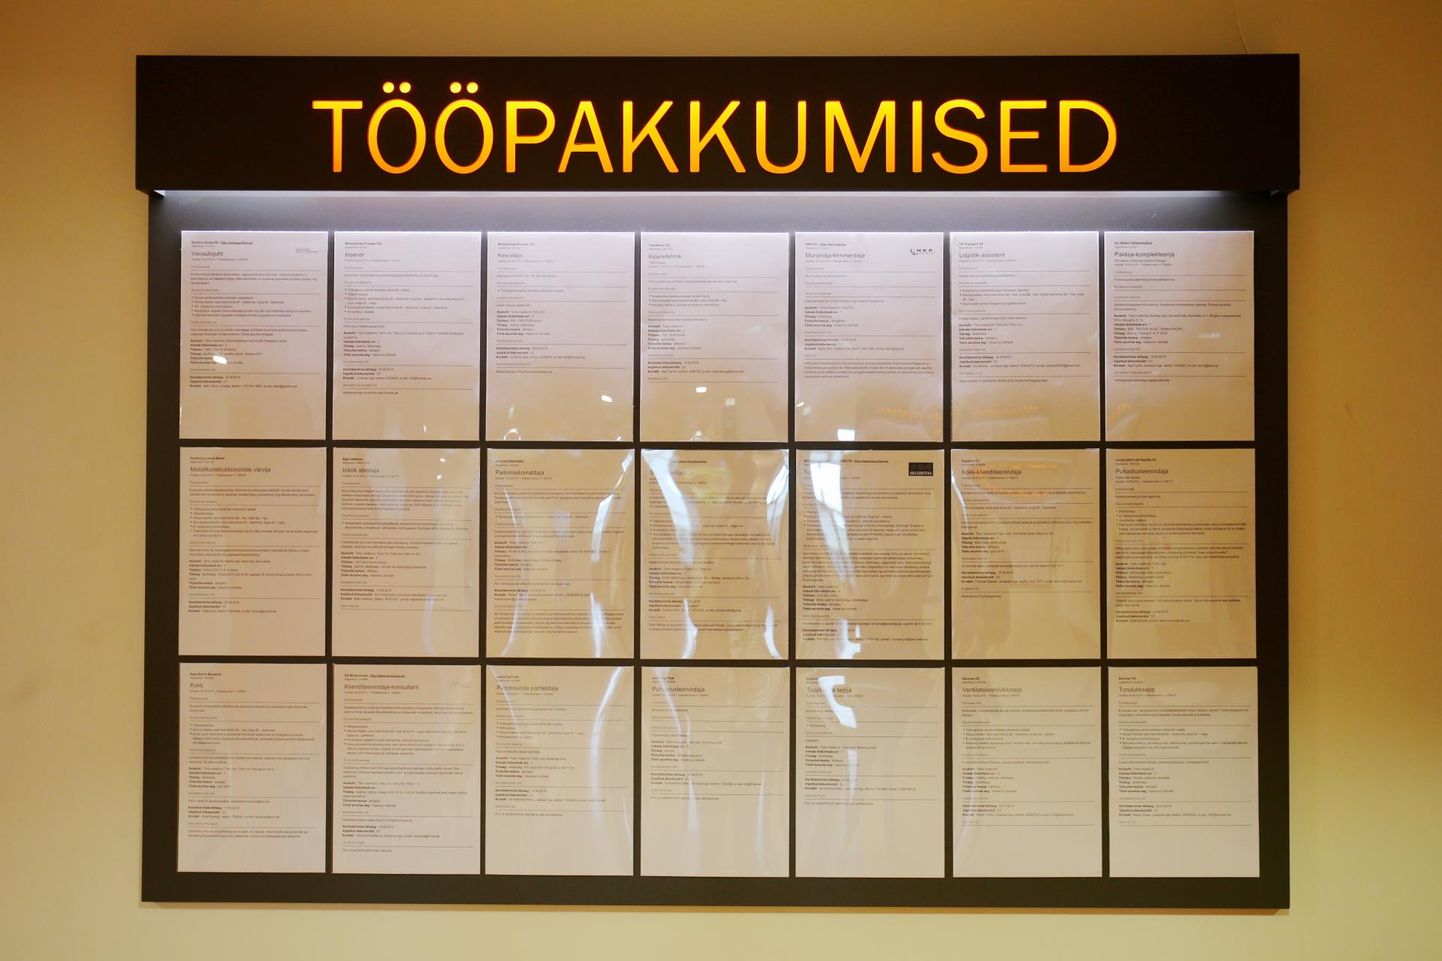 Enim vajatakse Pärnu maakonnas teenindus- ja müügitöötajaid ja lihttöölisi.